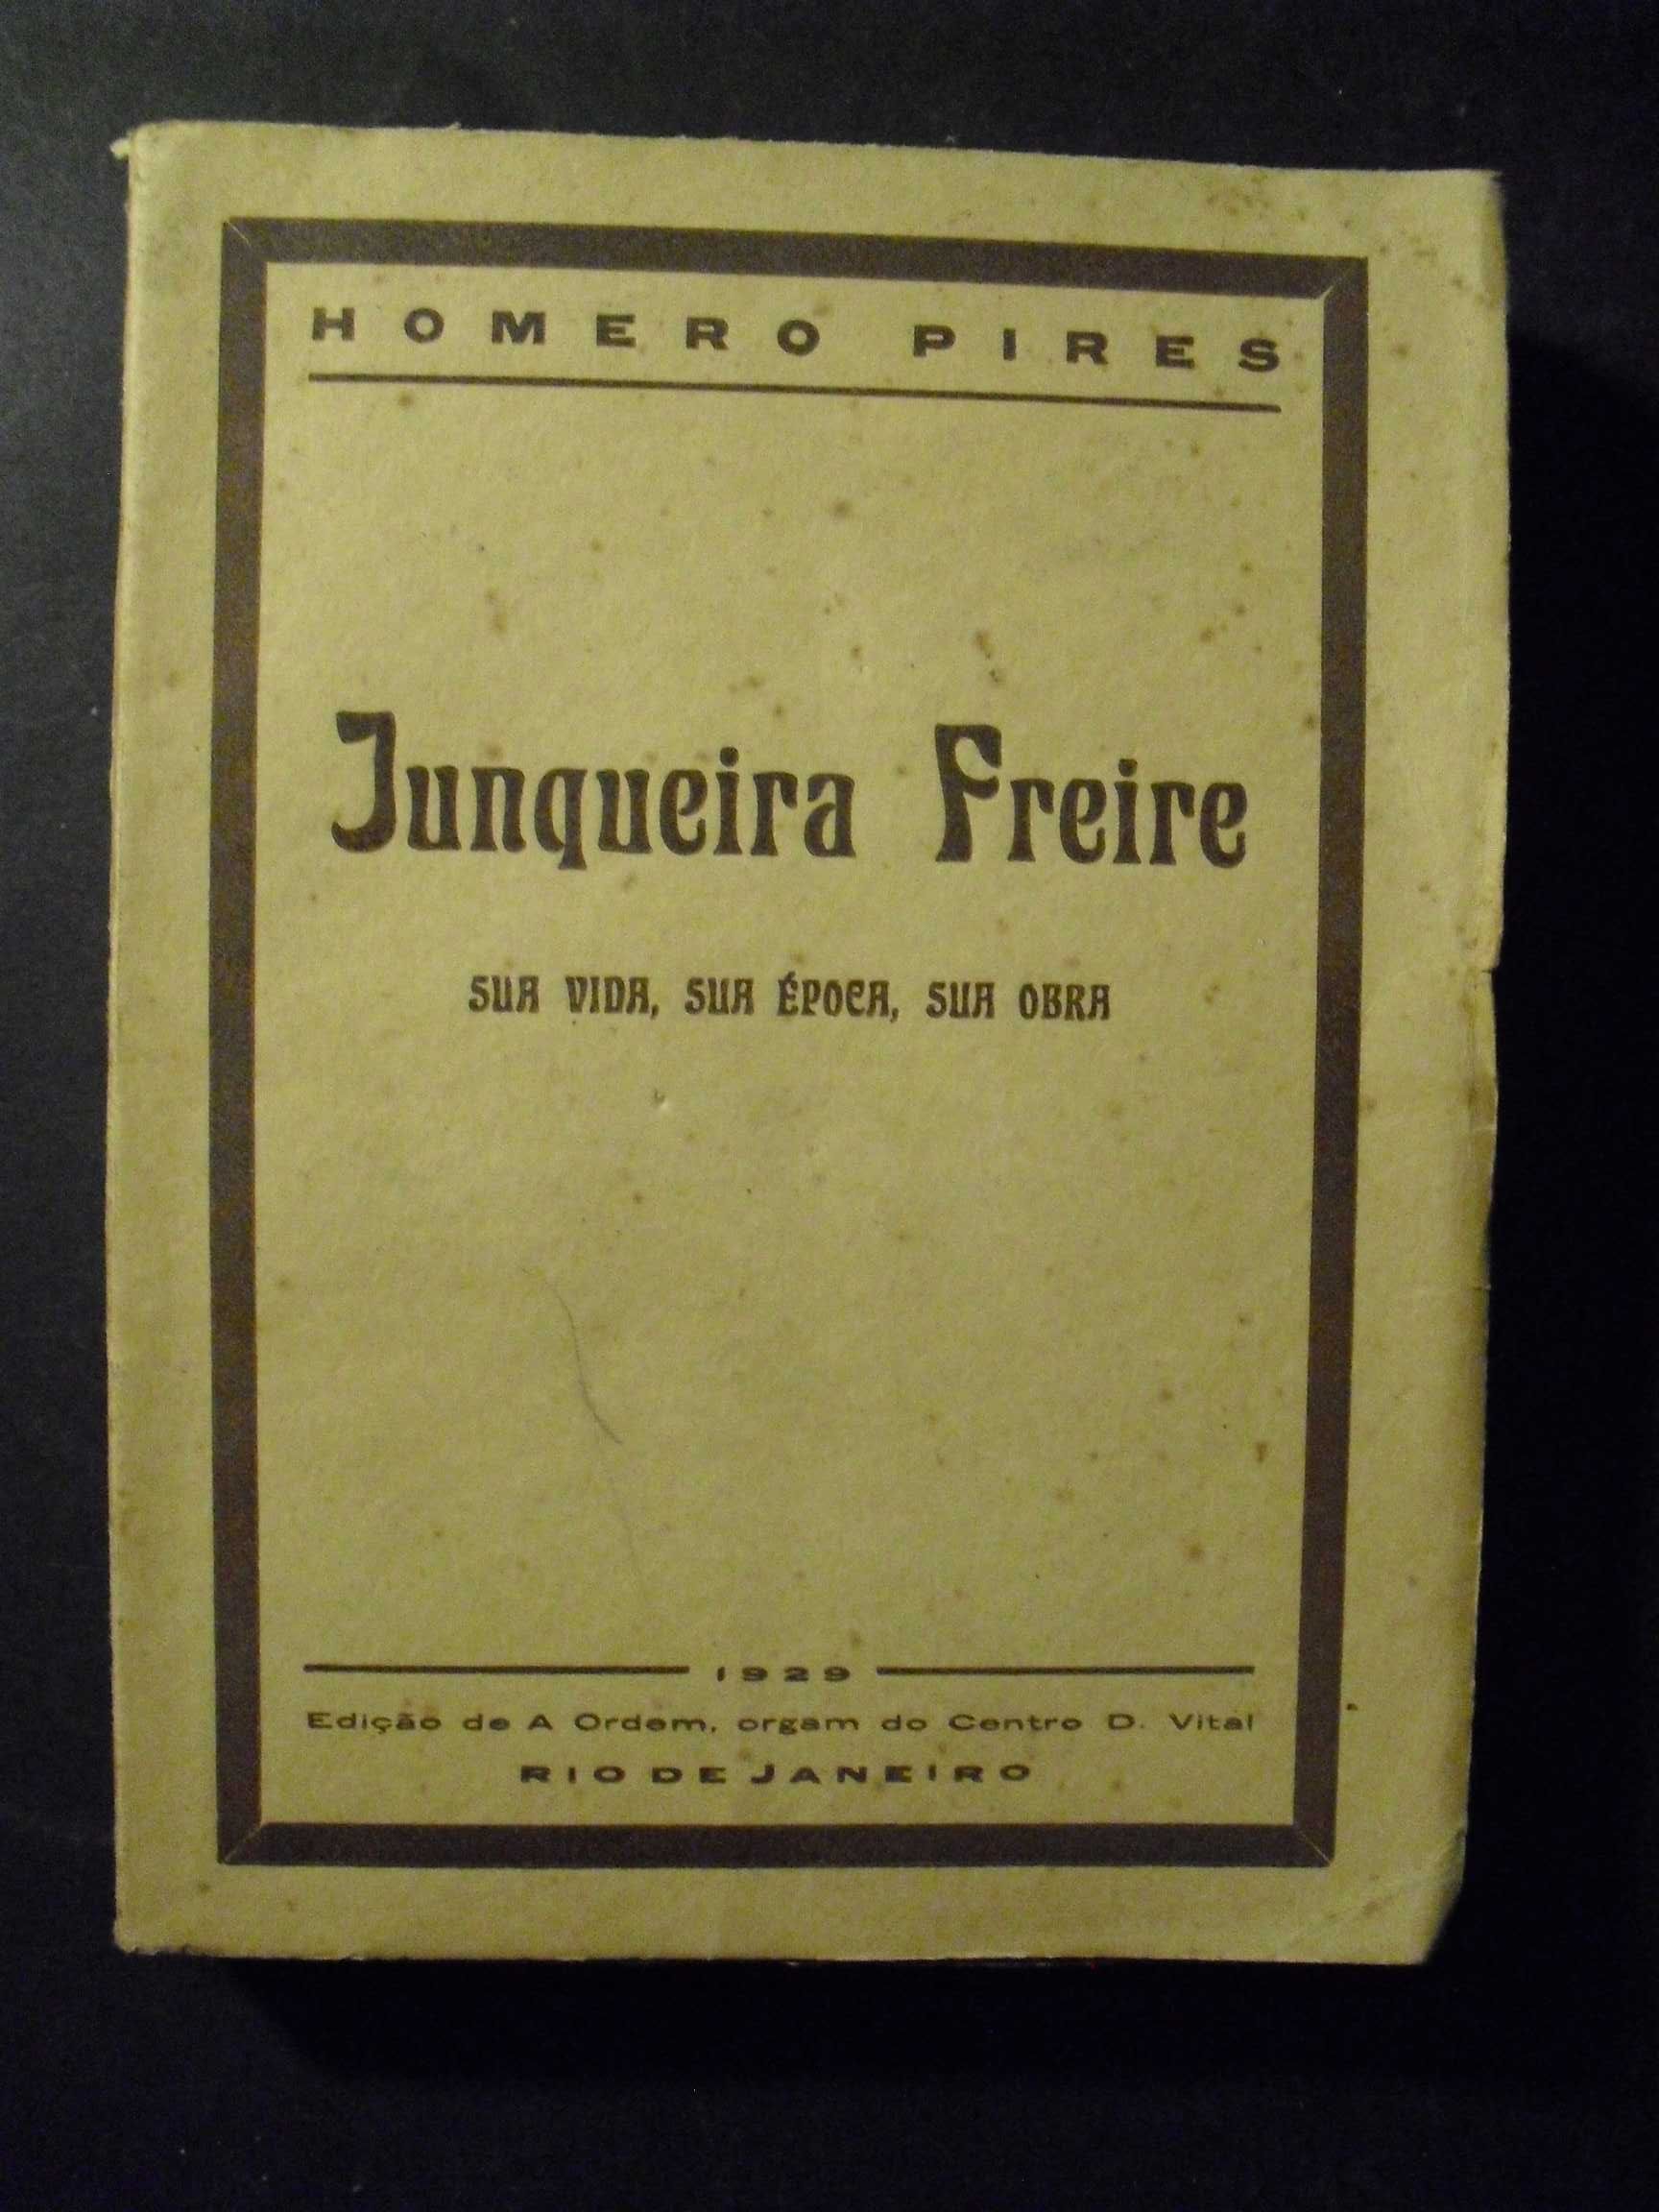 Pires (Homero);Junqueira Freire,Sua Vida,